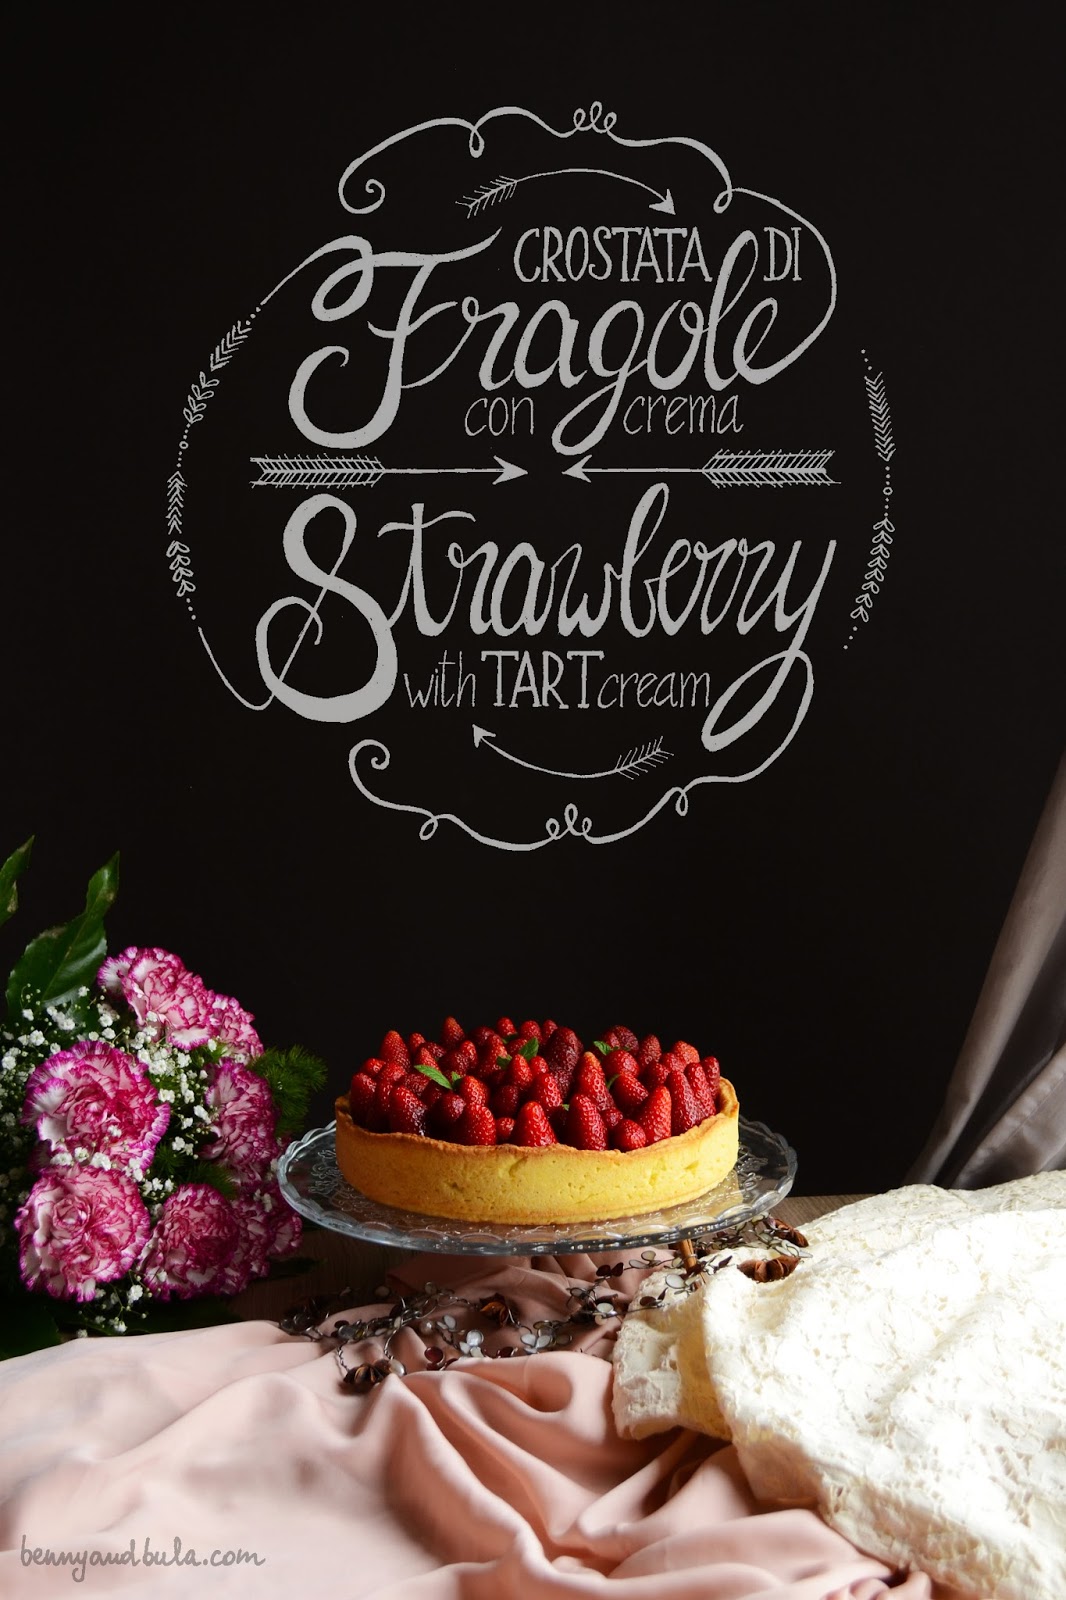 crostata fragole e crema ricetta/ strawberry cream tart recipe